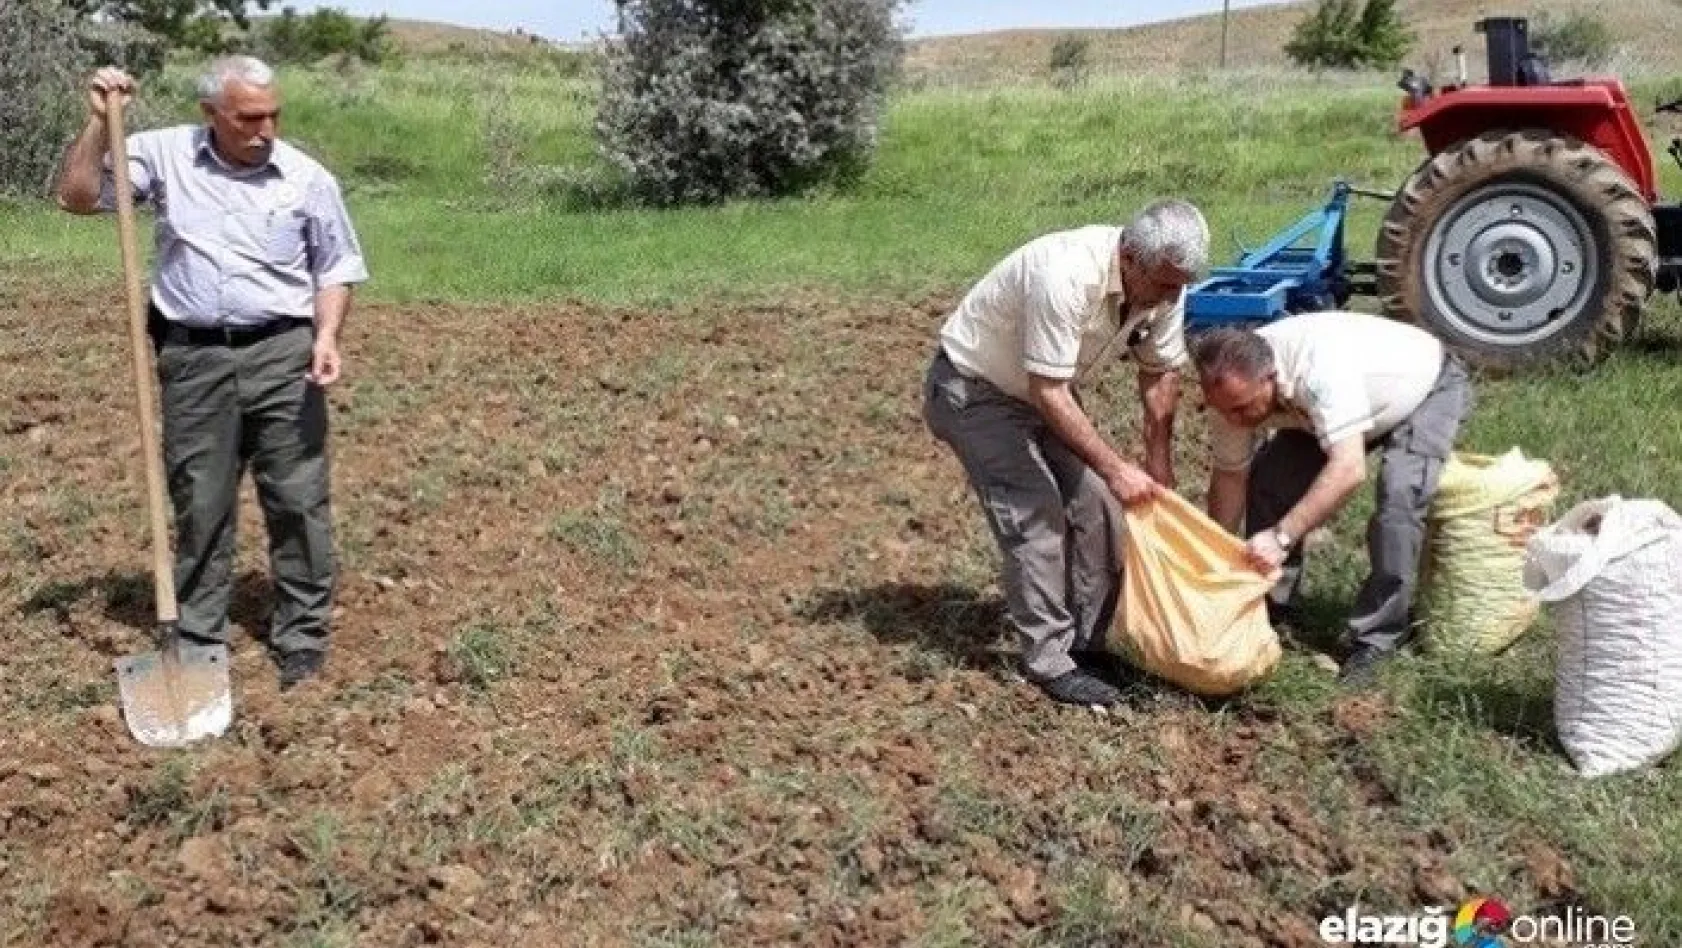 240 bin TL ceza kesilen, salep soğanları tekrar toprakla buluştu